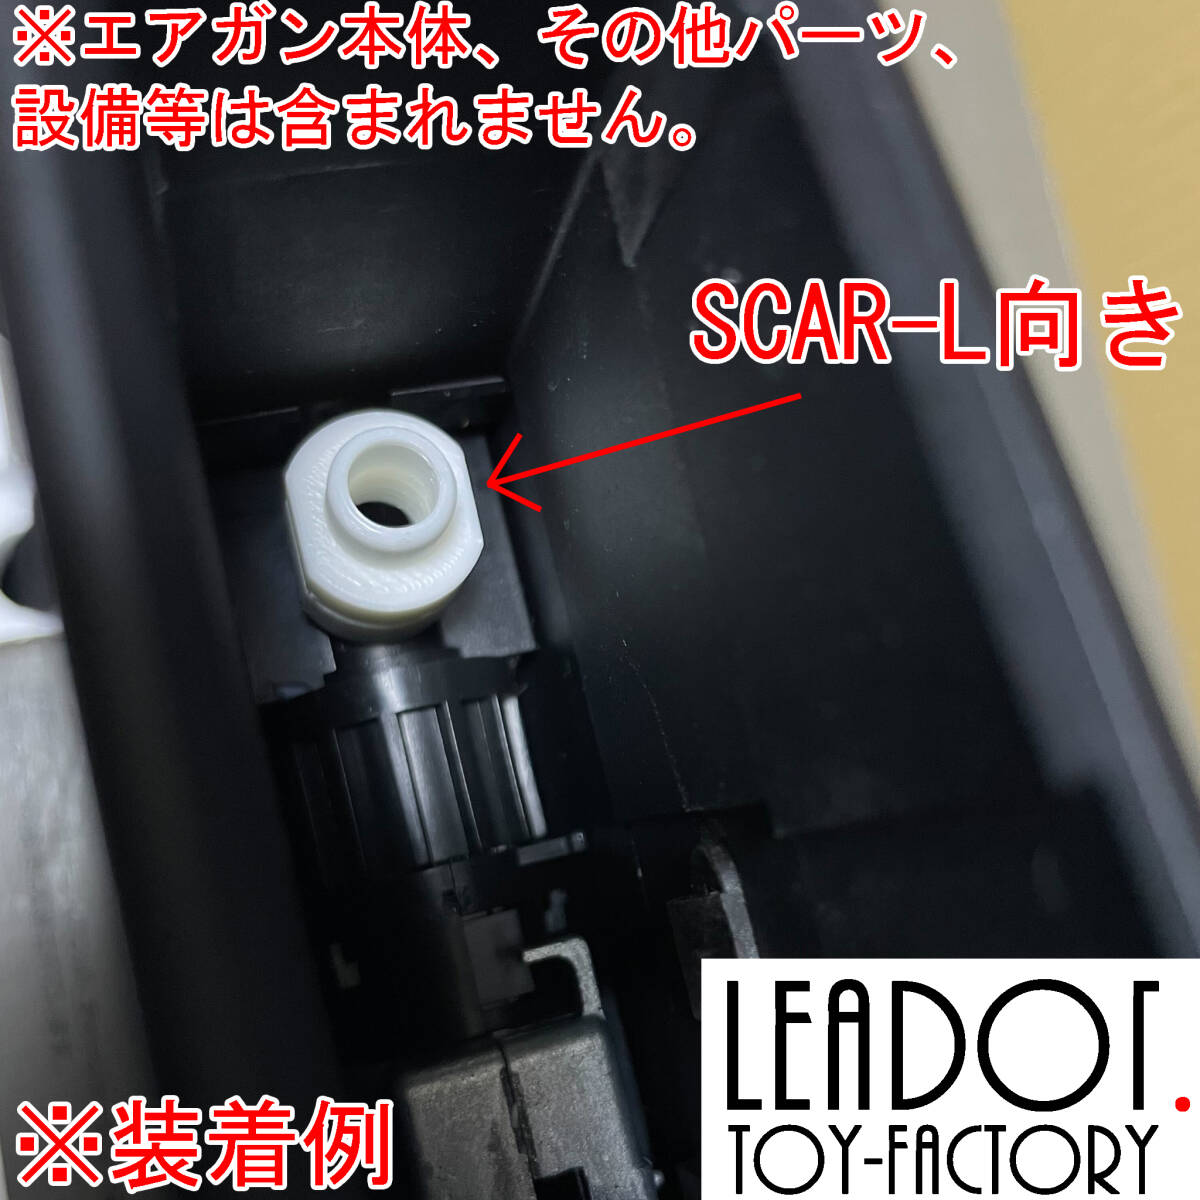 【要ロット差自己調整】Leadot. 東京マルイ 次世代 M4用 マガジンアダプターの画像2